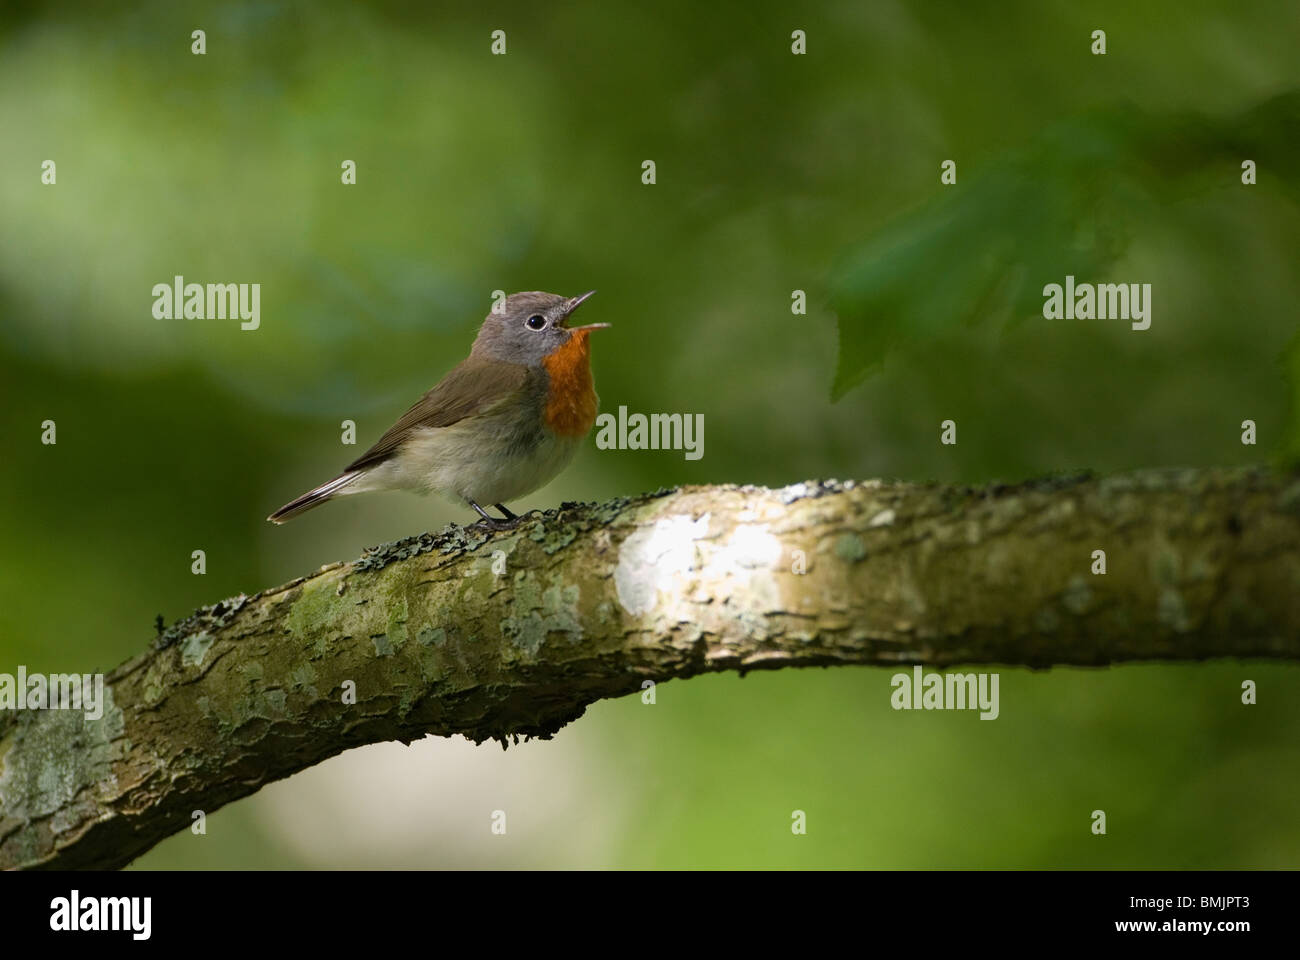 La Scandinavia, Svezia, Skane, Spotted Flycatcher il canto degli uccelli sul ramo, close-up Foto Stock